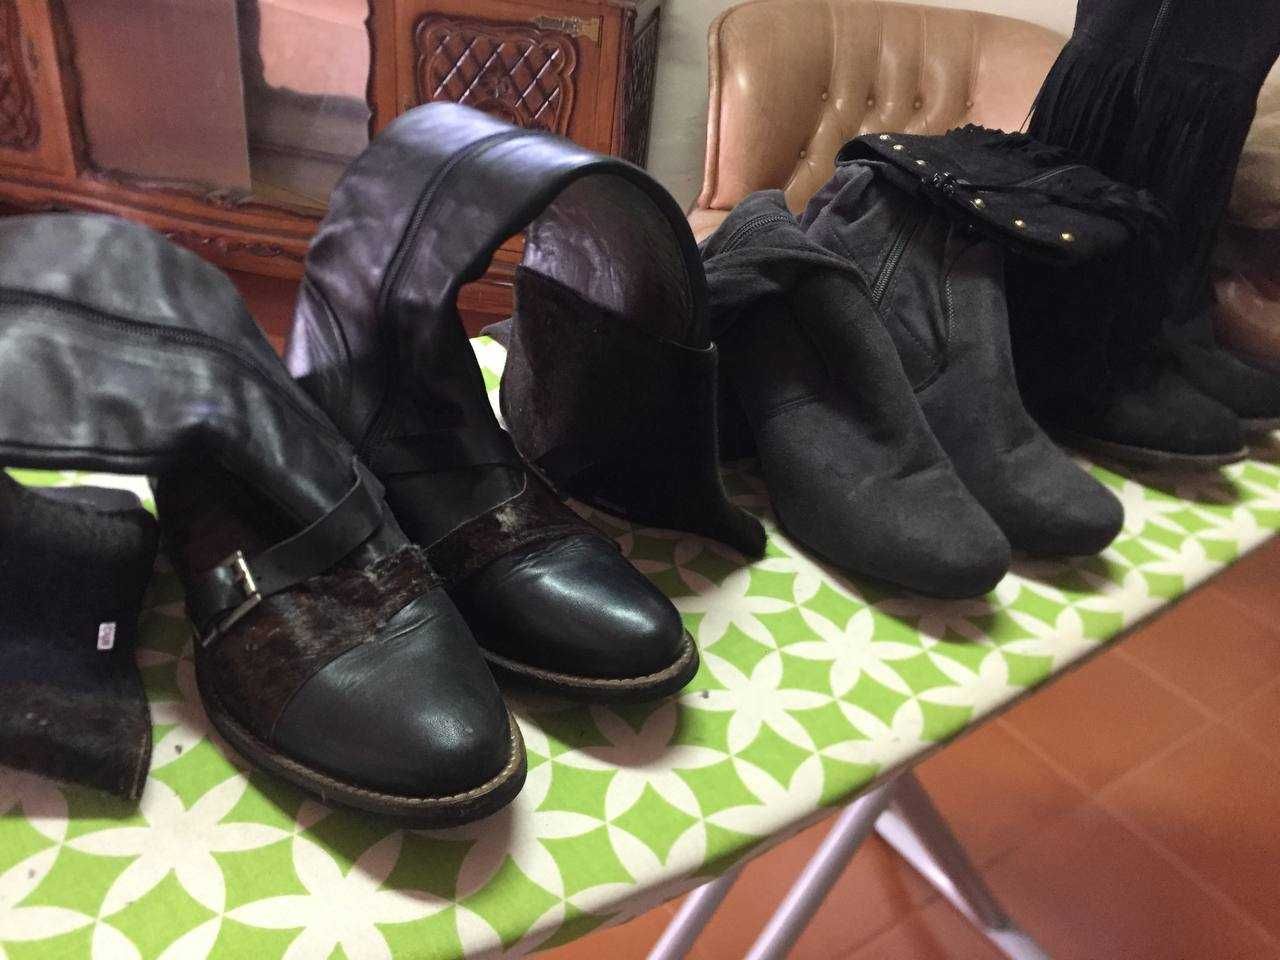 Conjunto de peças de calçado: sapatilhas, sapatos, botins e botas.